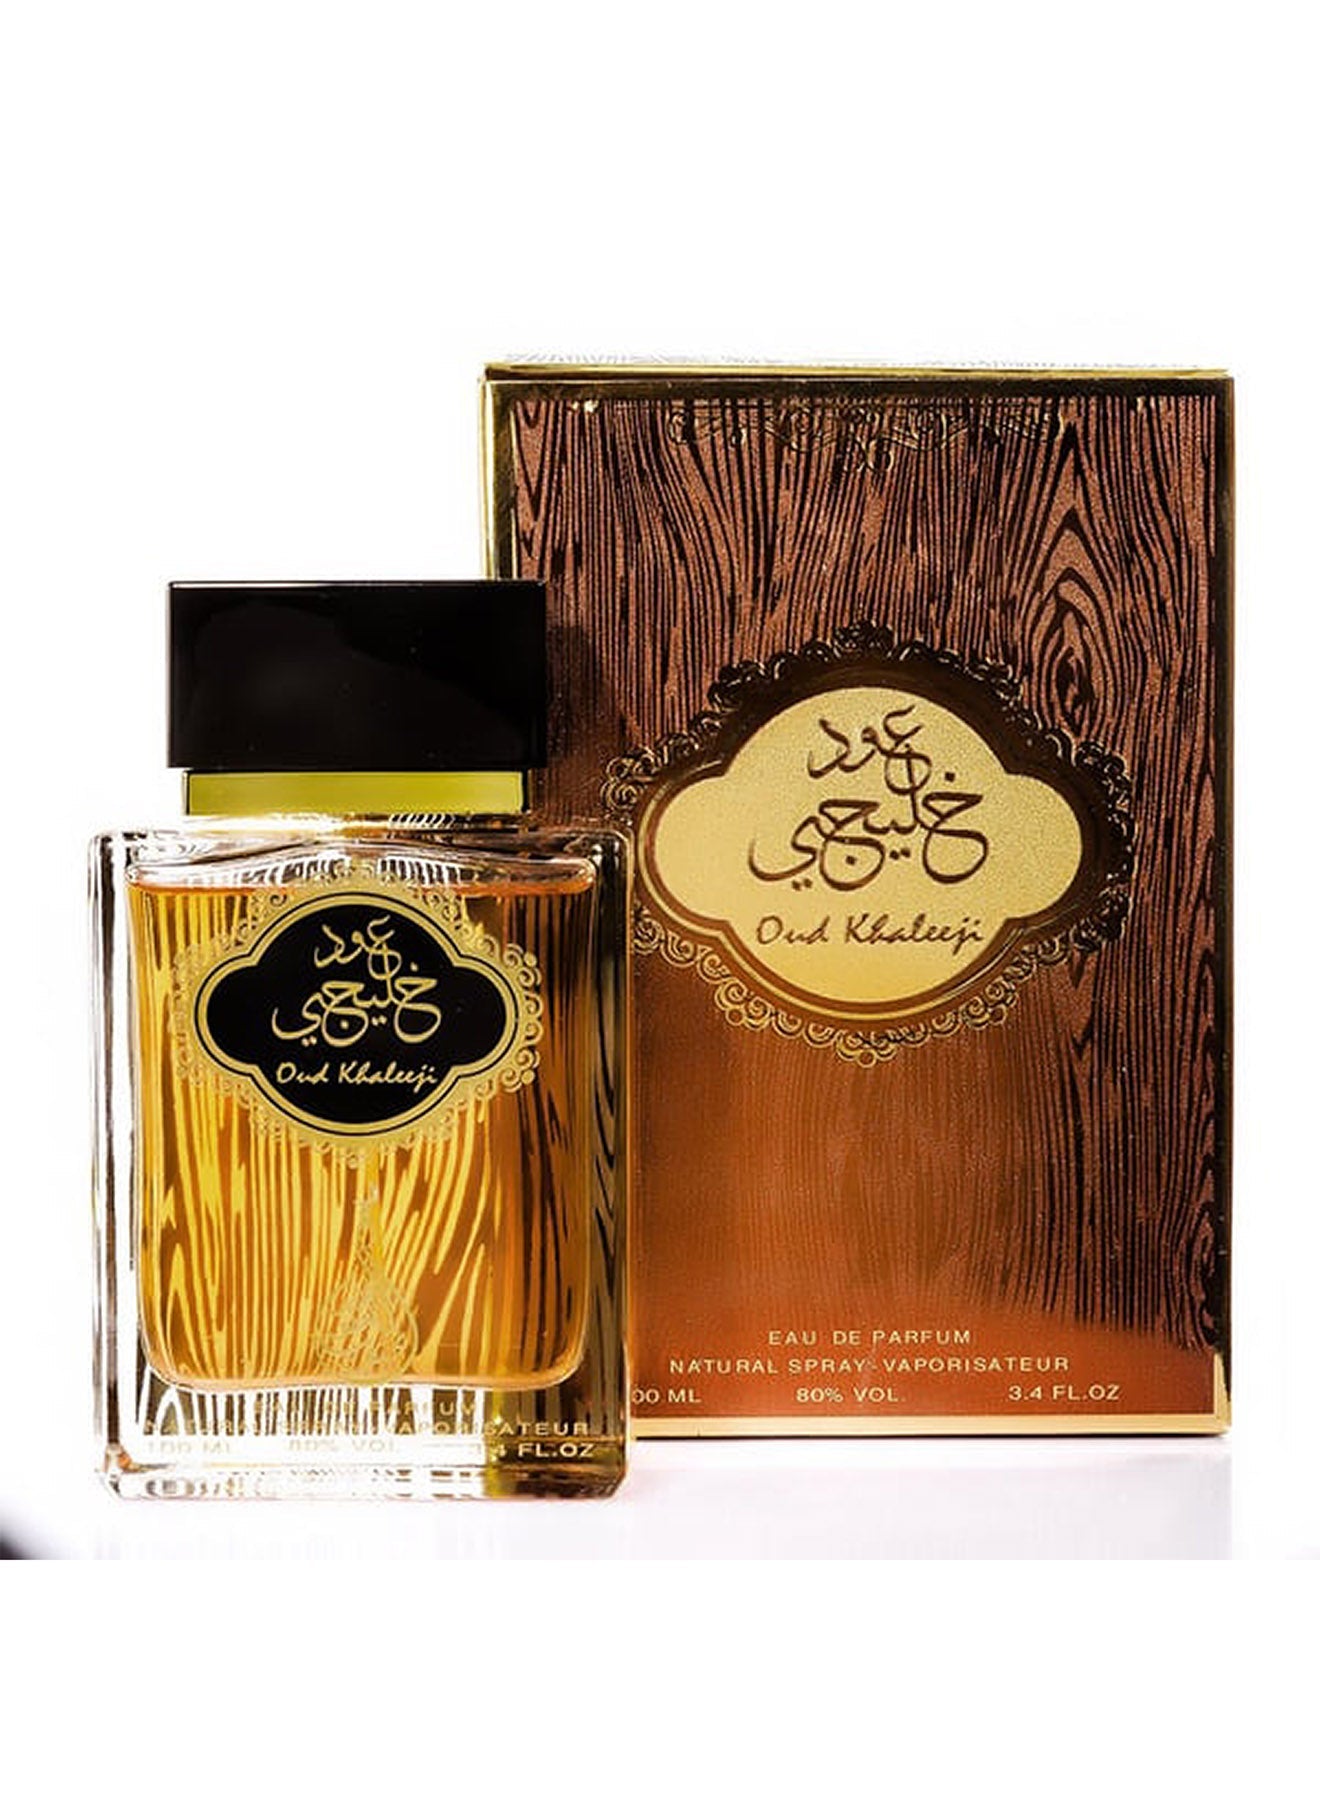 Oud Khaleeji Eau De Parfum 100ml Value Pack of 12 